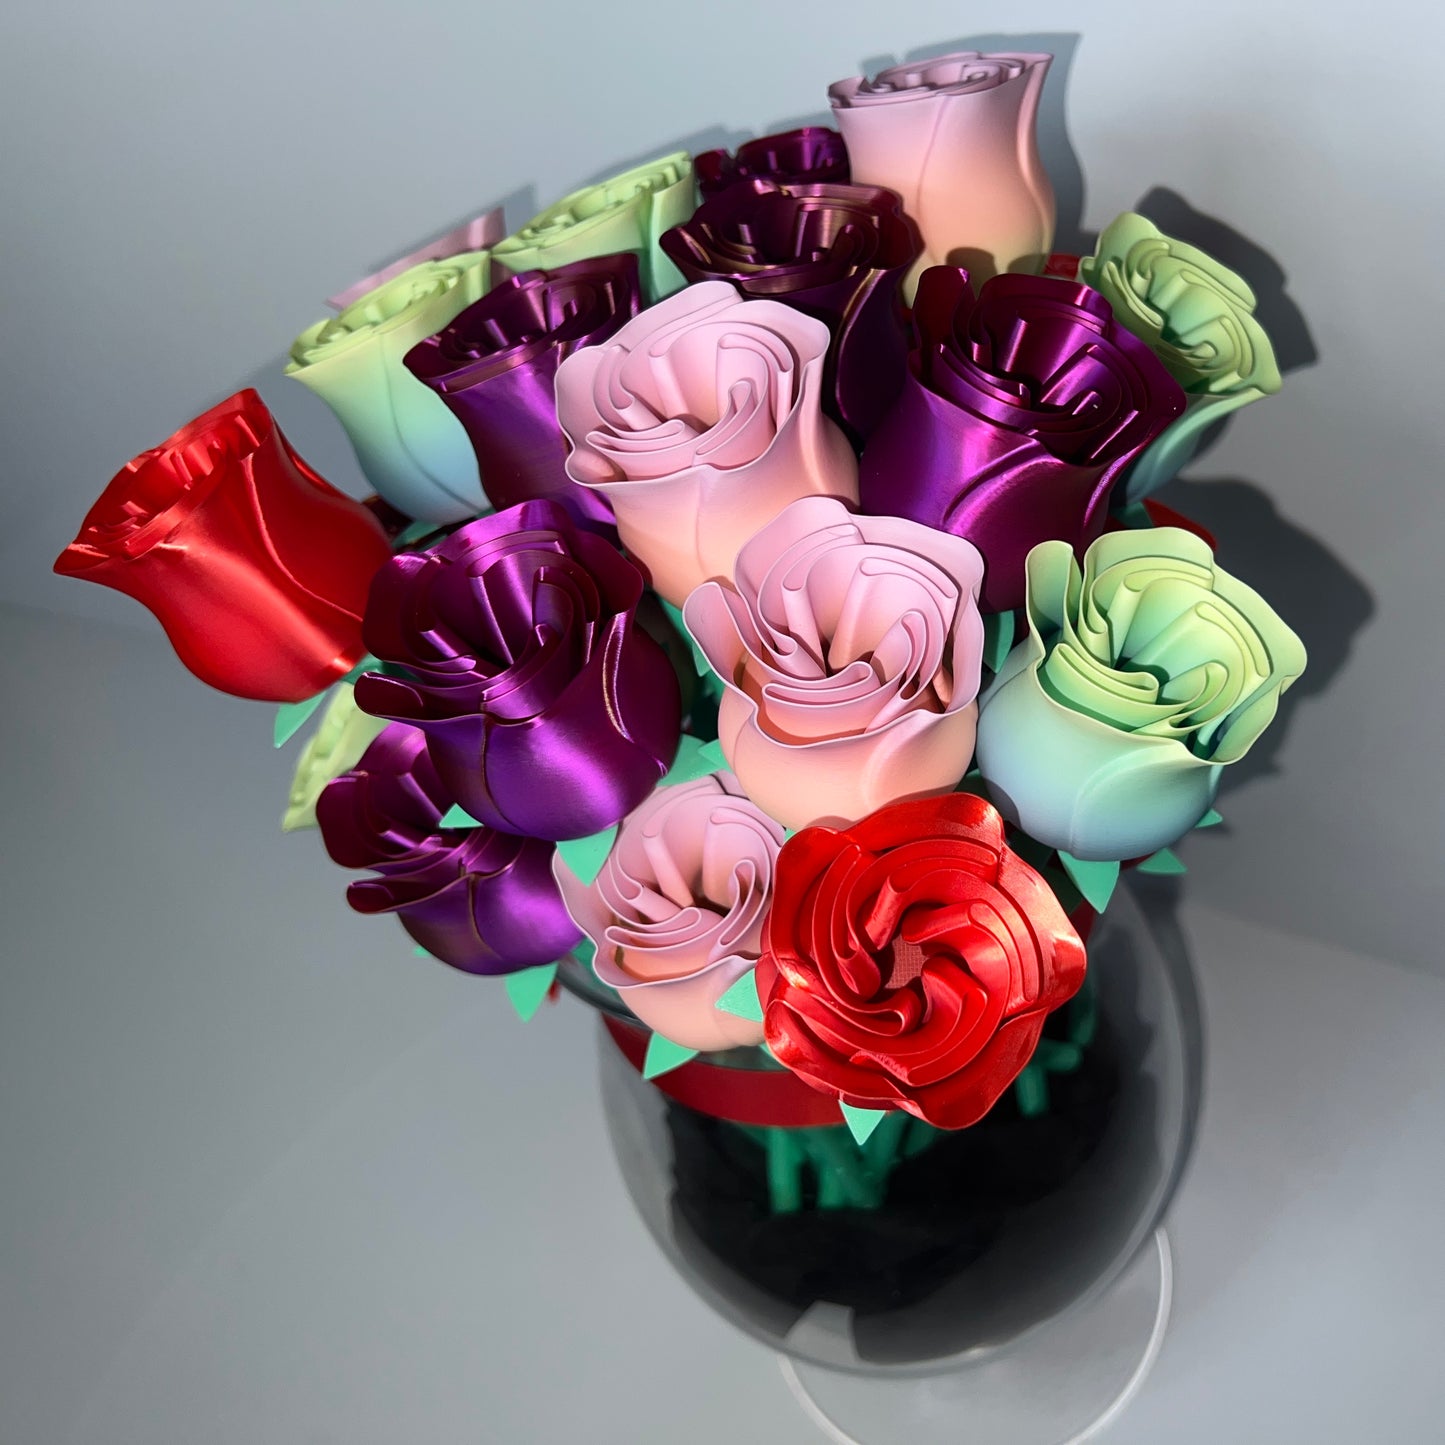 Roses - 3D Printed